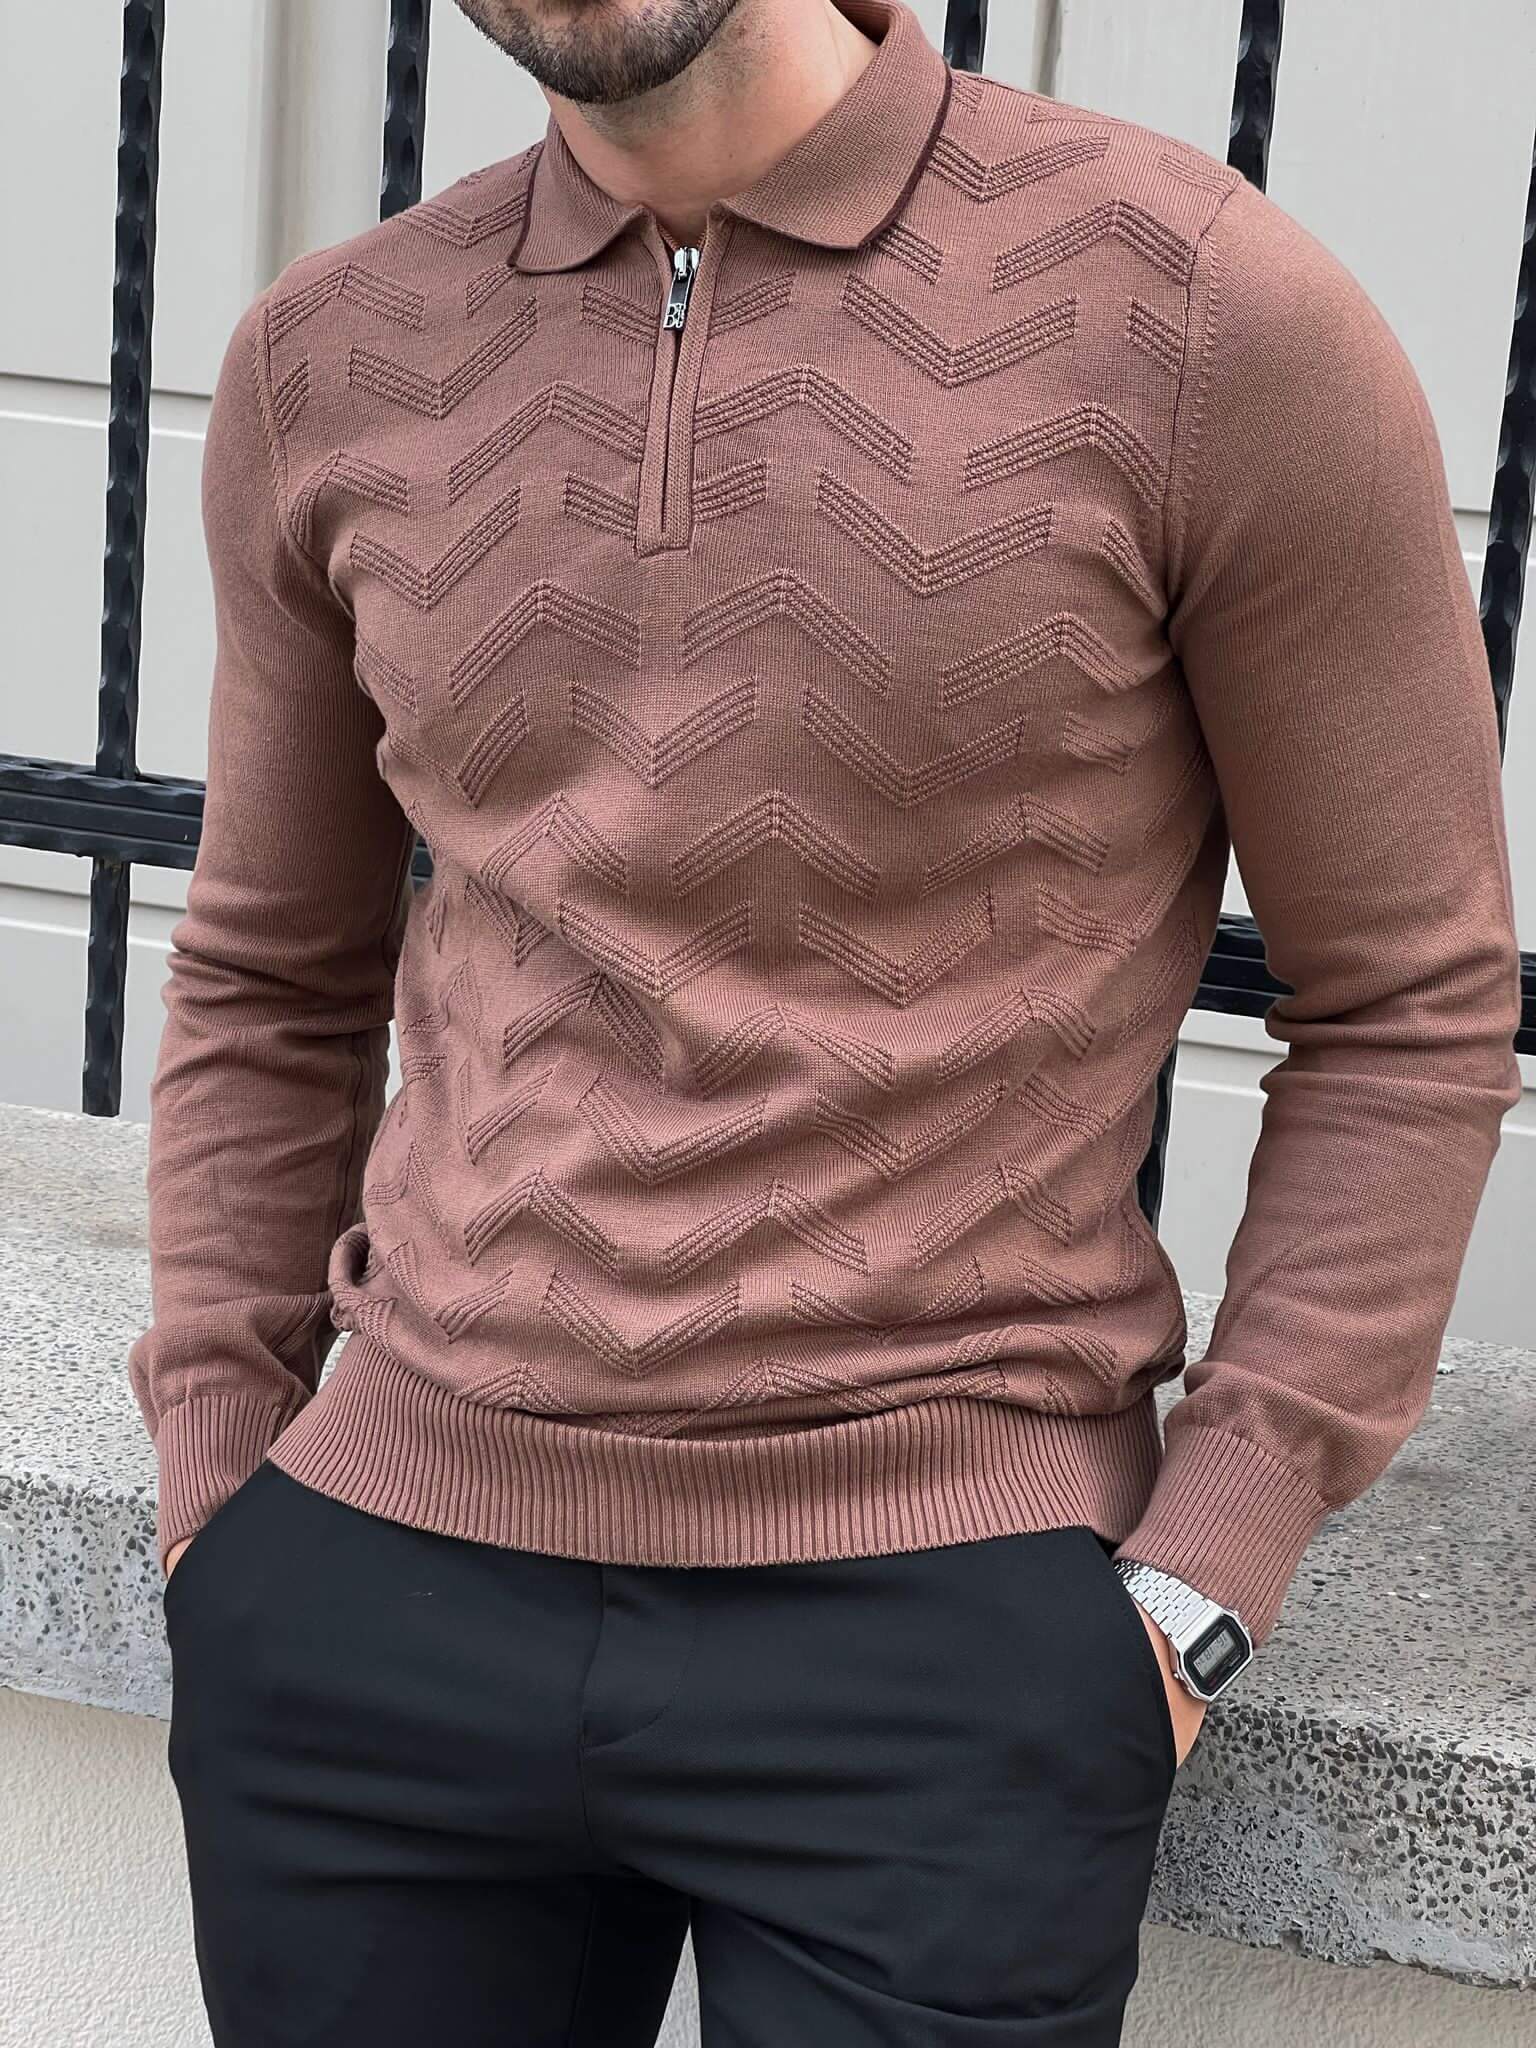  A stylish Zipper Neck Mink Sweater, featuring a sleek zipper detail on the neckline.